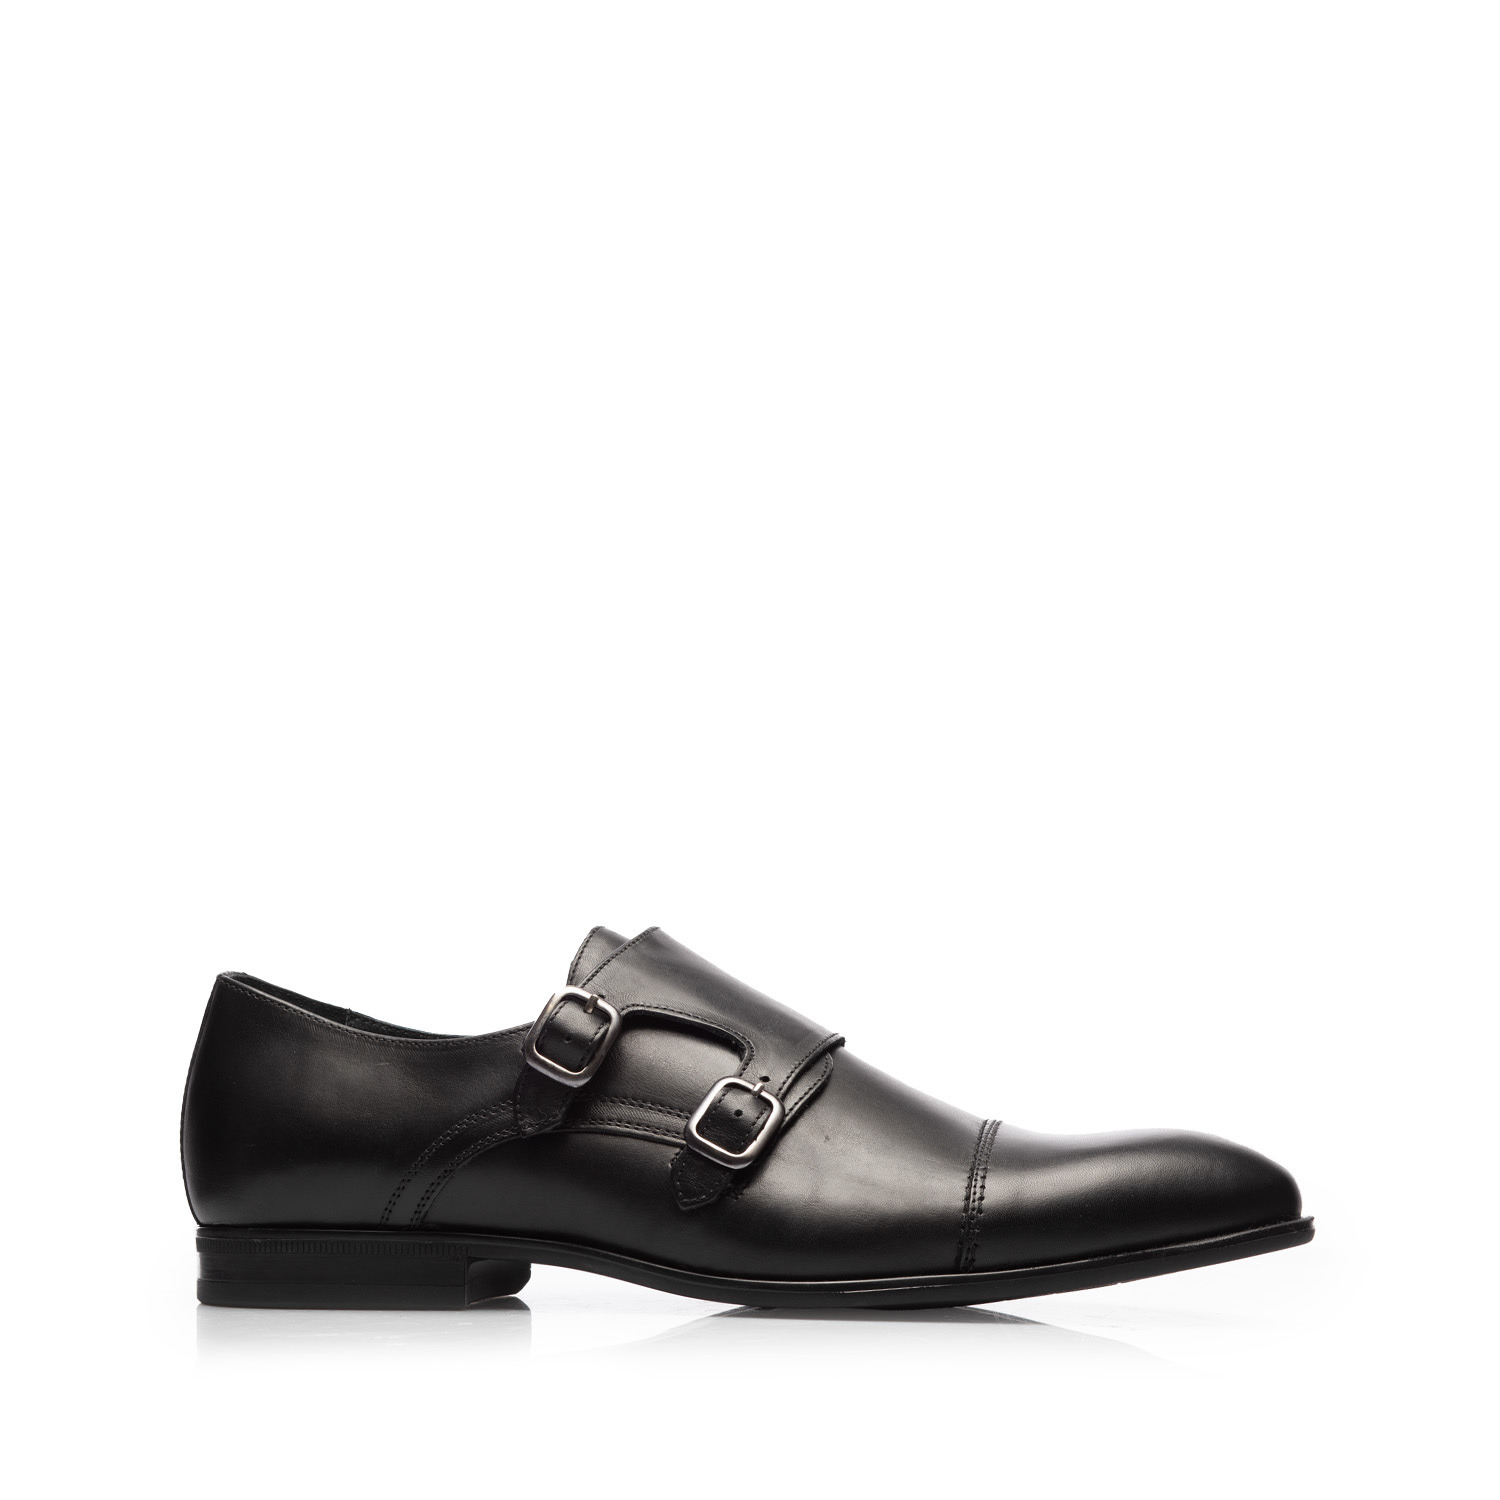 Pantofi eleganti barbati cu catarame din piele naturala, Leofex - 933 Negru Box